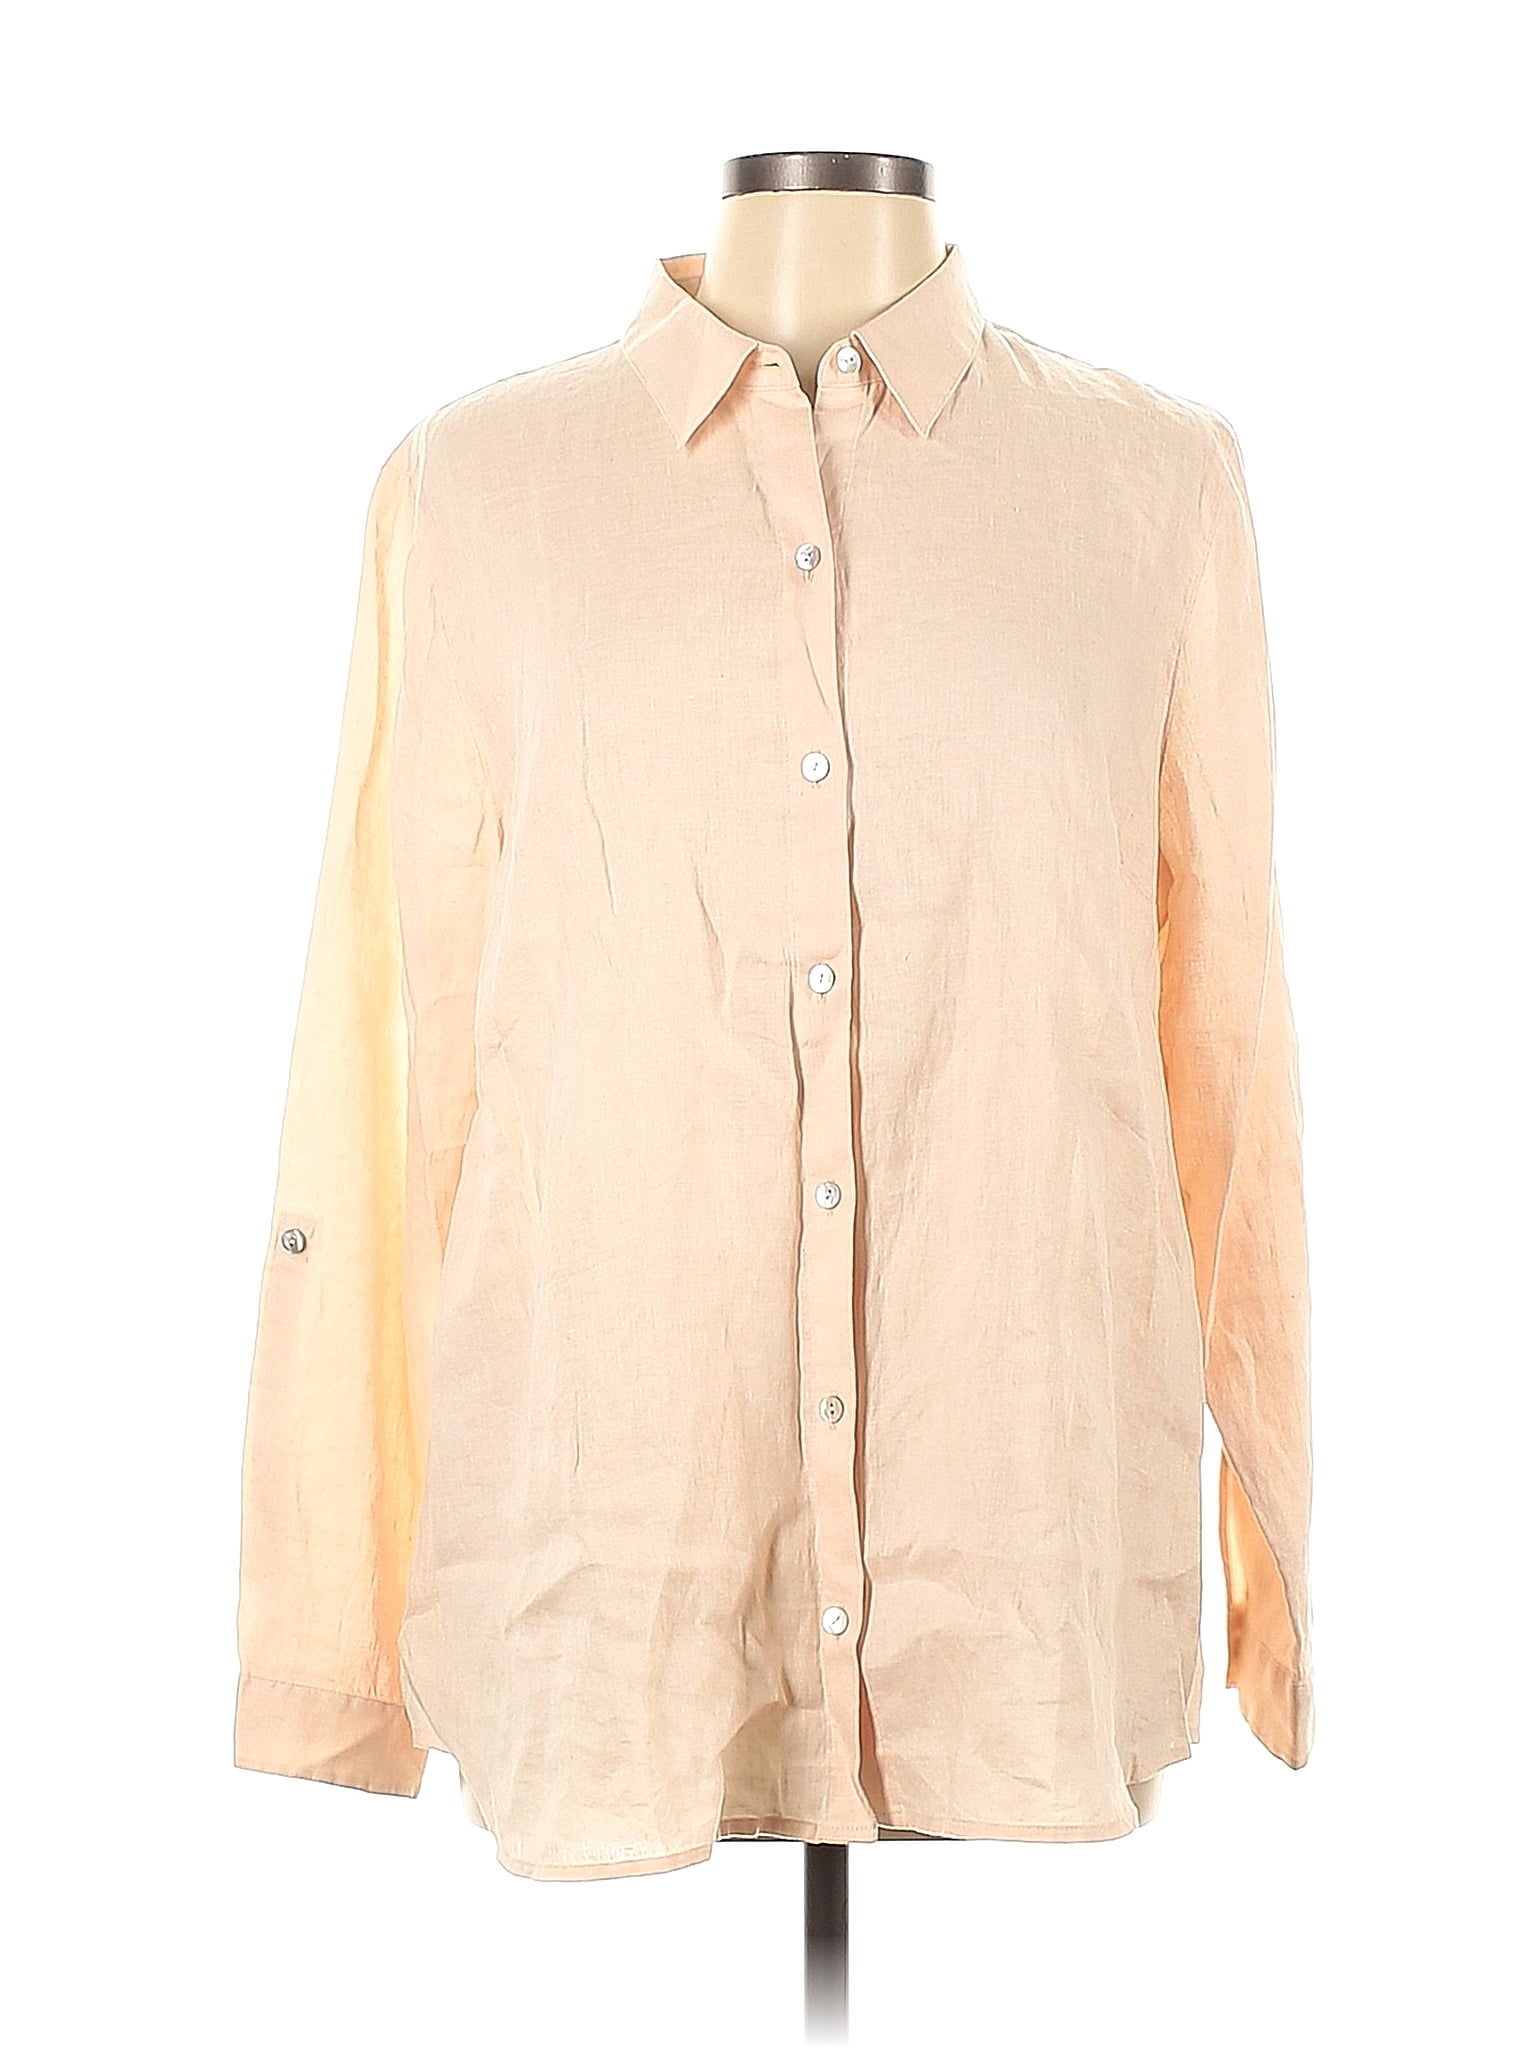 J.Jill 100% Linen Tan Long Sleeve Button-Down Shirt Size L - 65% off ...